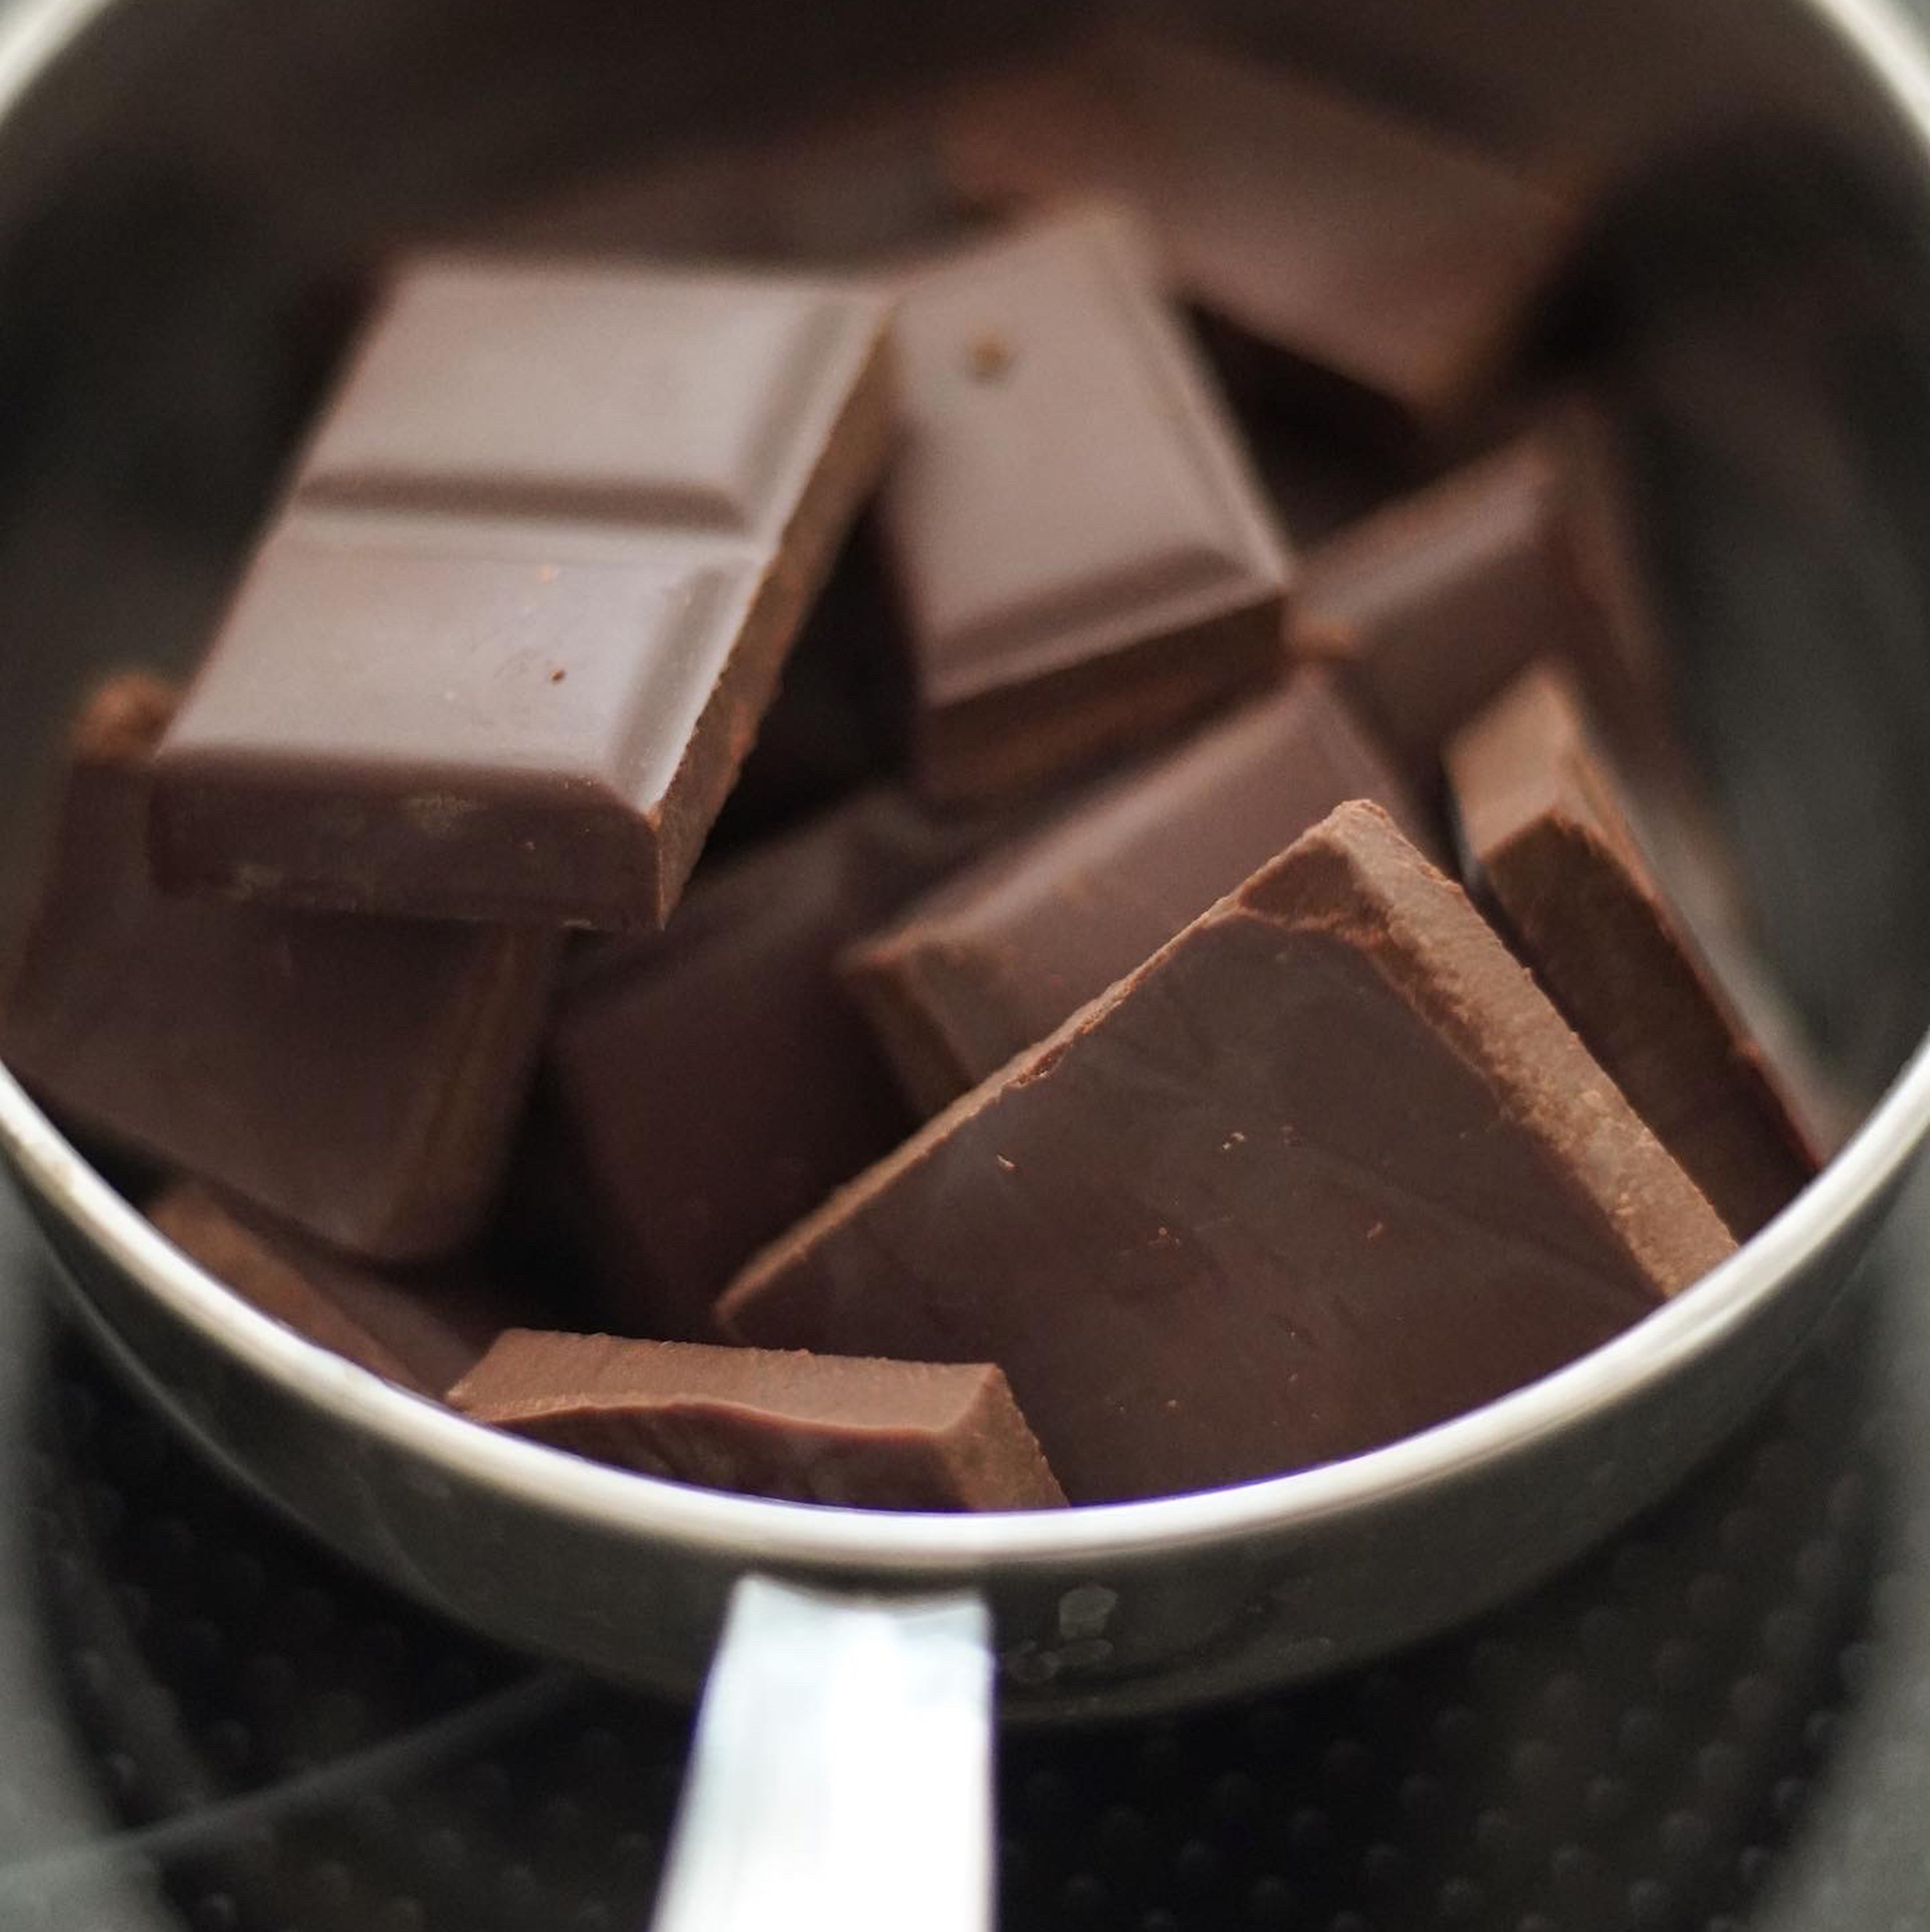 Den Ofen auf 180°C vorheizen. Die Schokolade in kleine Stücke brechen, in eine ofenfeste Schale geben und im aufwärmenden Ofen schmelzen lassen.